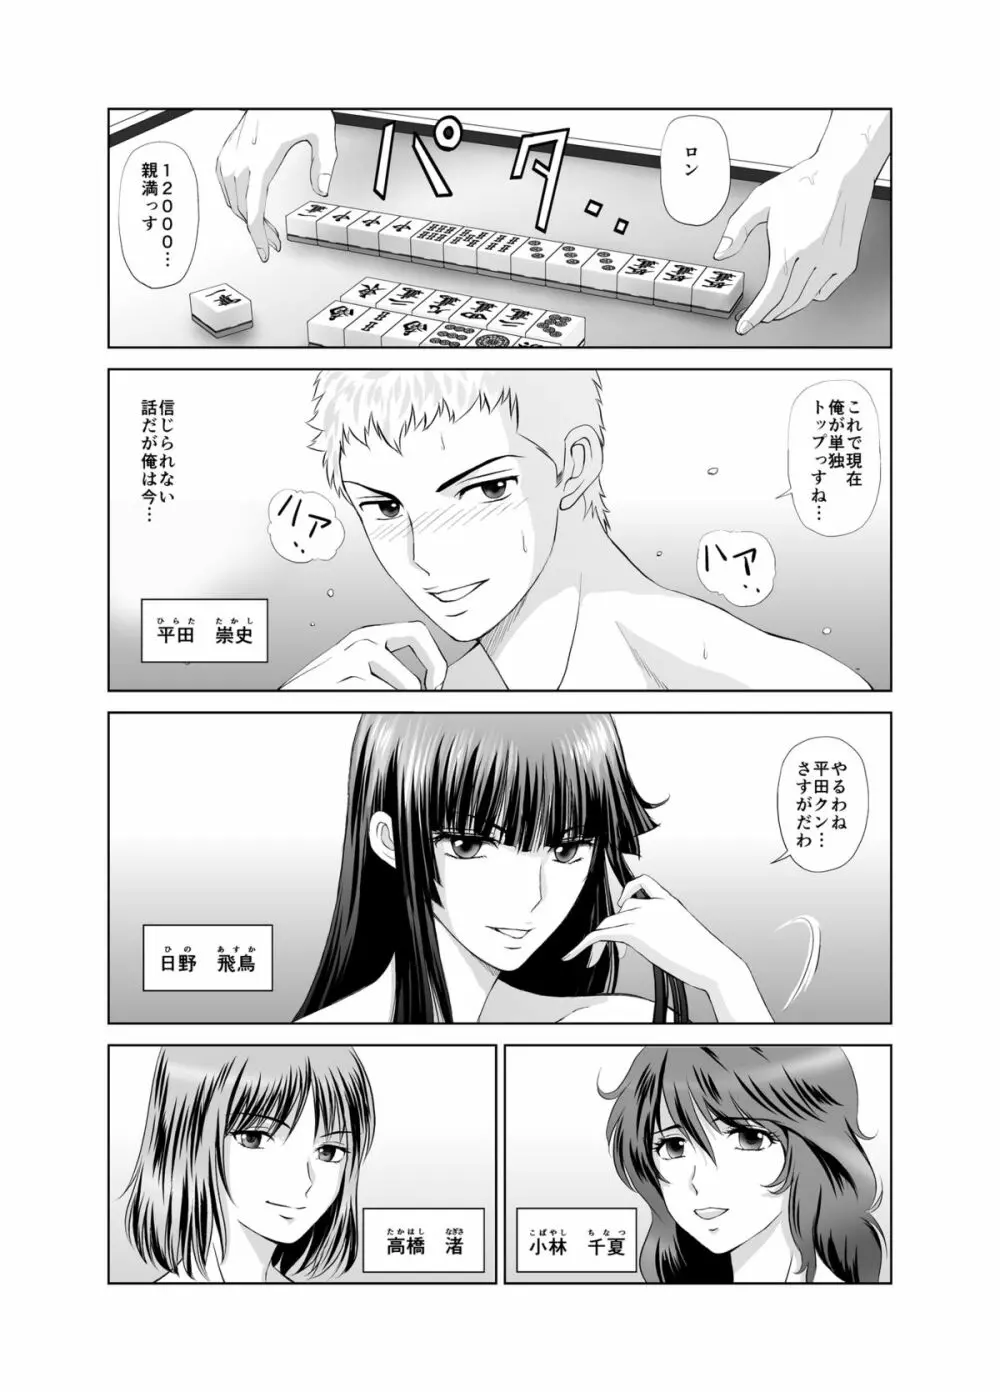 脱衣麻雀～漫画編～【完成版】 Page.1